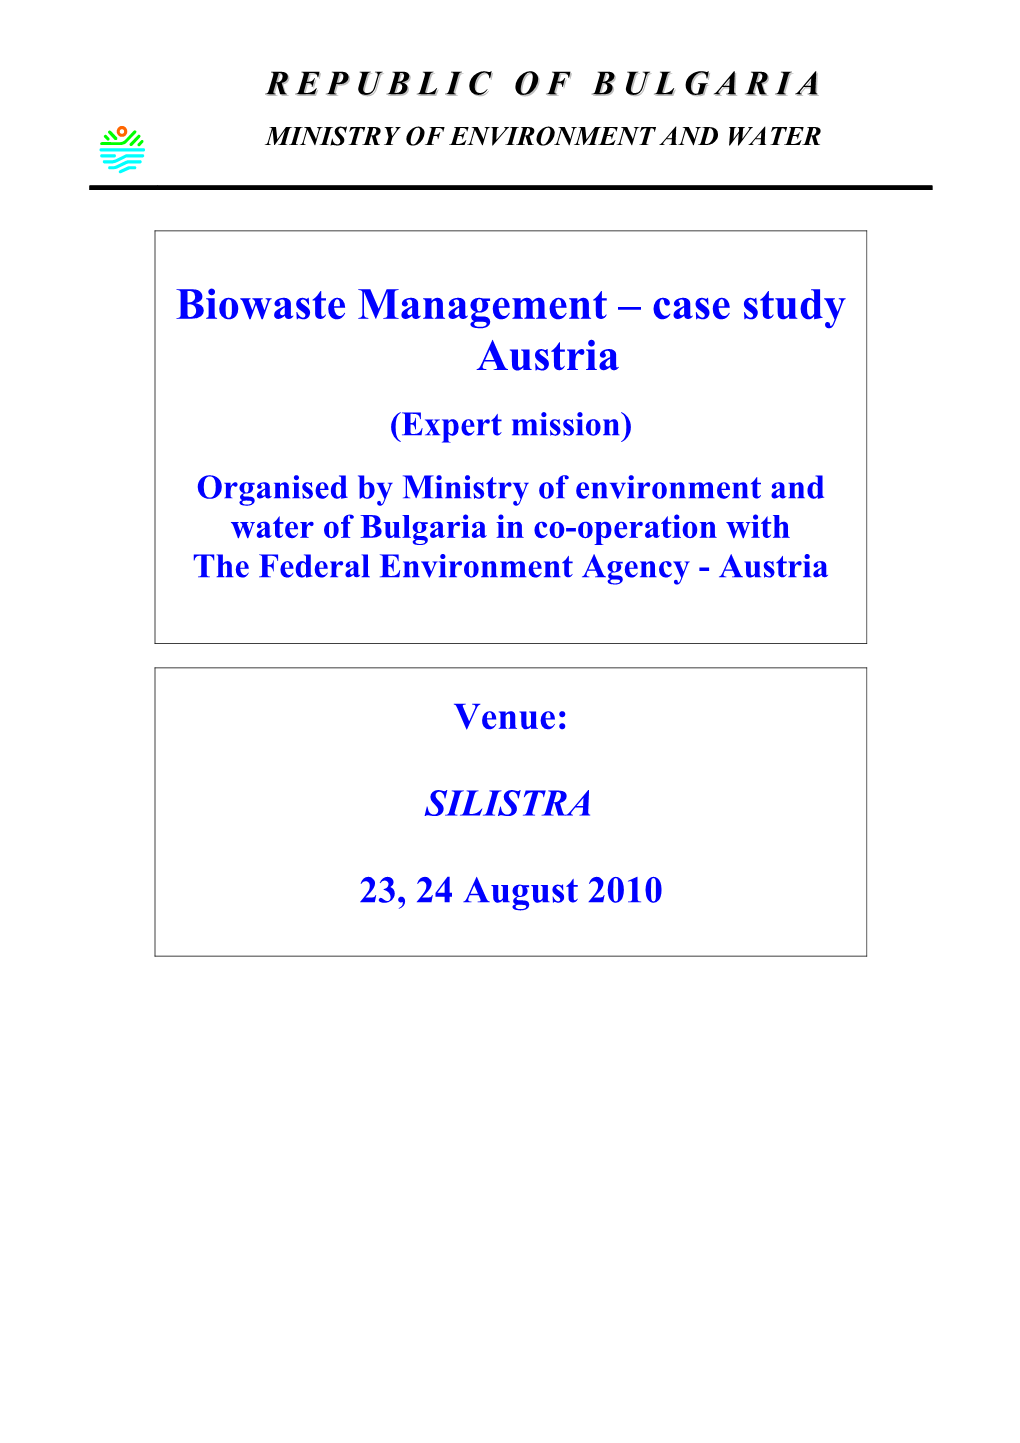 Biowaste Management Case Study Austria